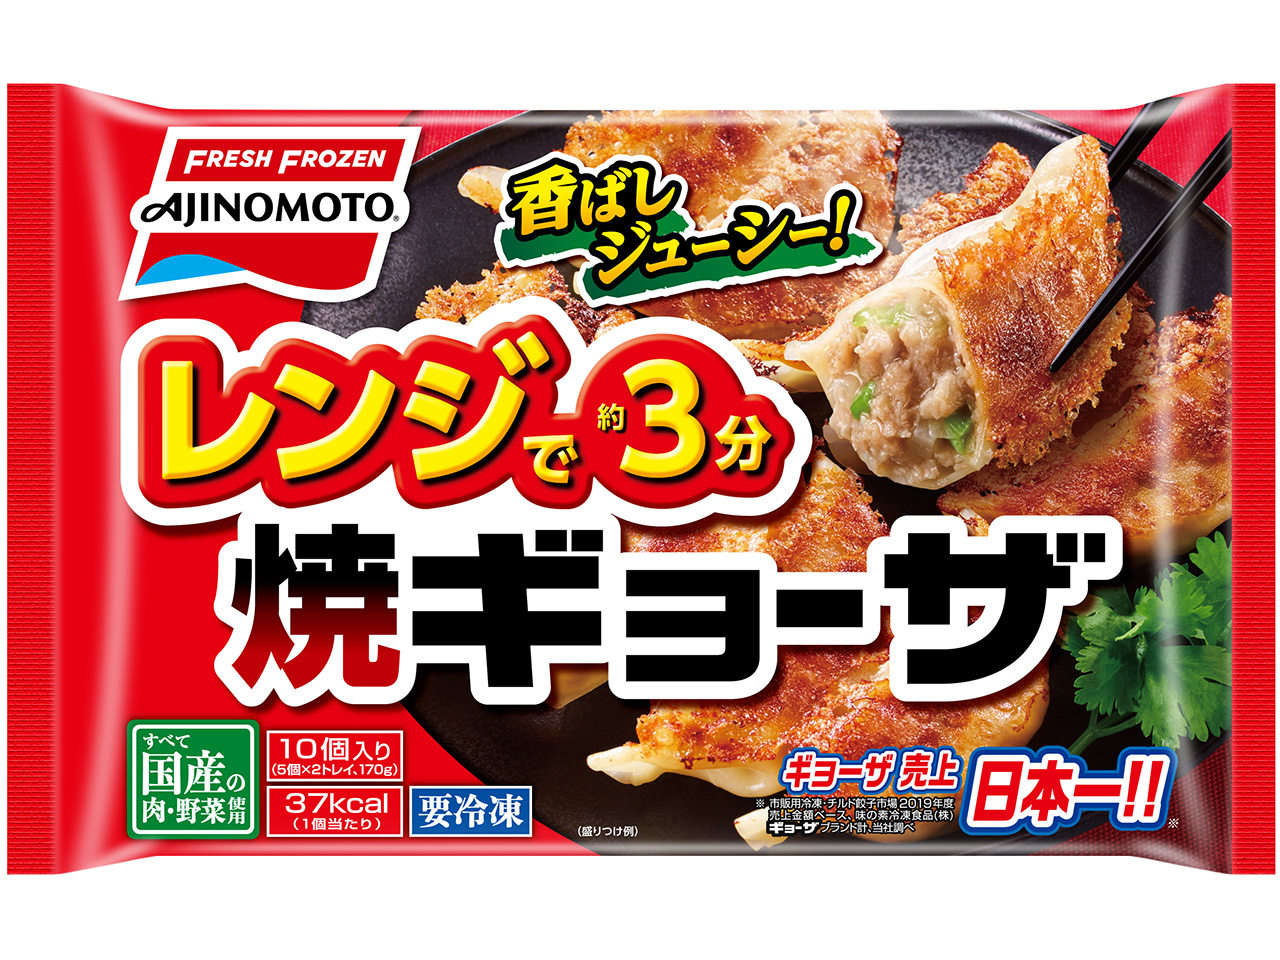 ギョーザ売上日本一の味の素冷凍食品 株 から レンジで焼ギョーザ が新発売 21年2月14日 日 より地域限定で発売開始 味の素冷凍 食品株式会社のプレスリリース